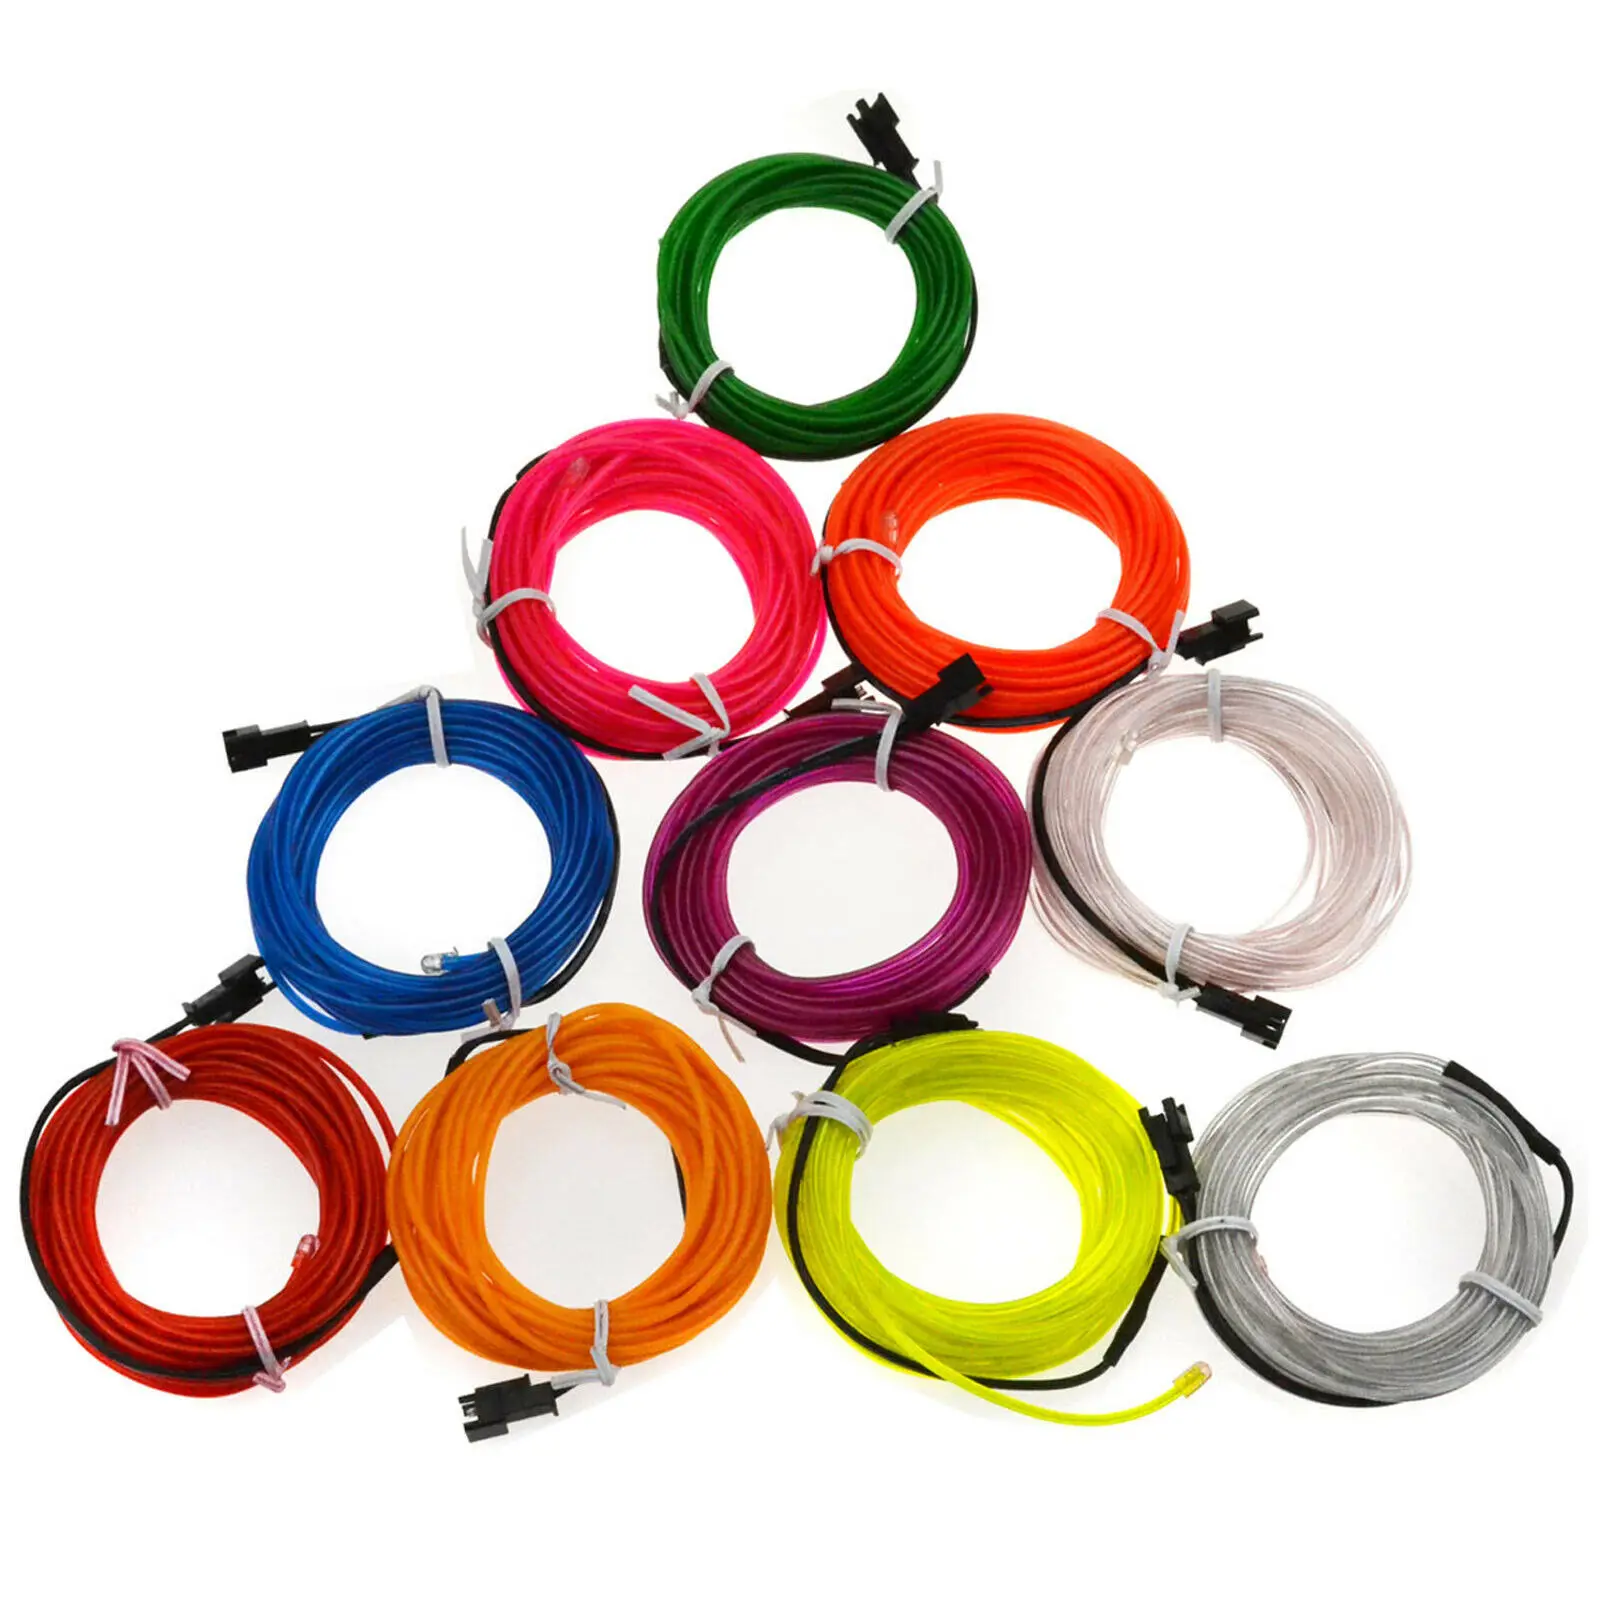 EL tel LED Glow işık renkli 1M 3.28ft halat bant kablo şerit Neon işıkları ayakkabı giyim araba su geçirmez şerit işıkları DIY